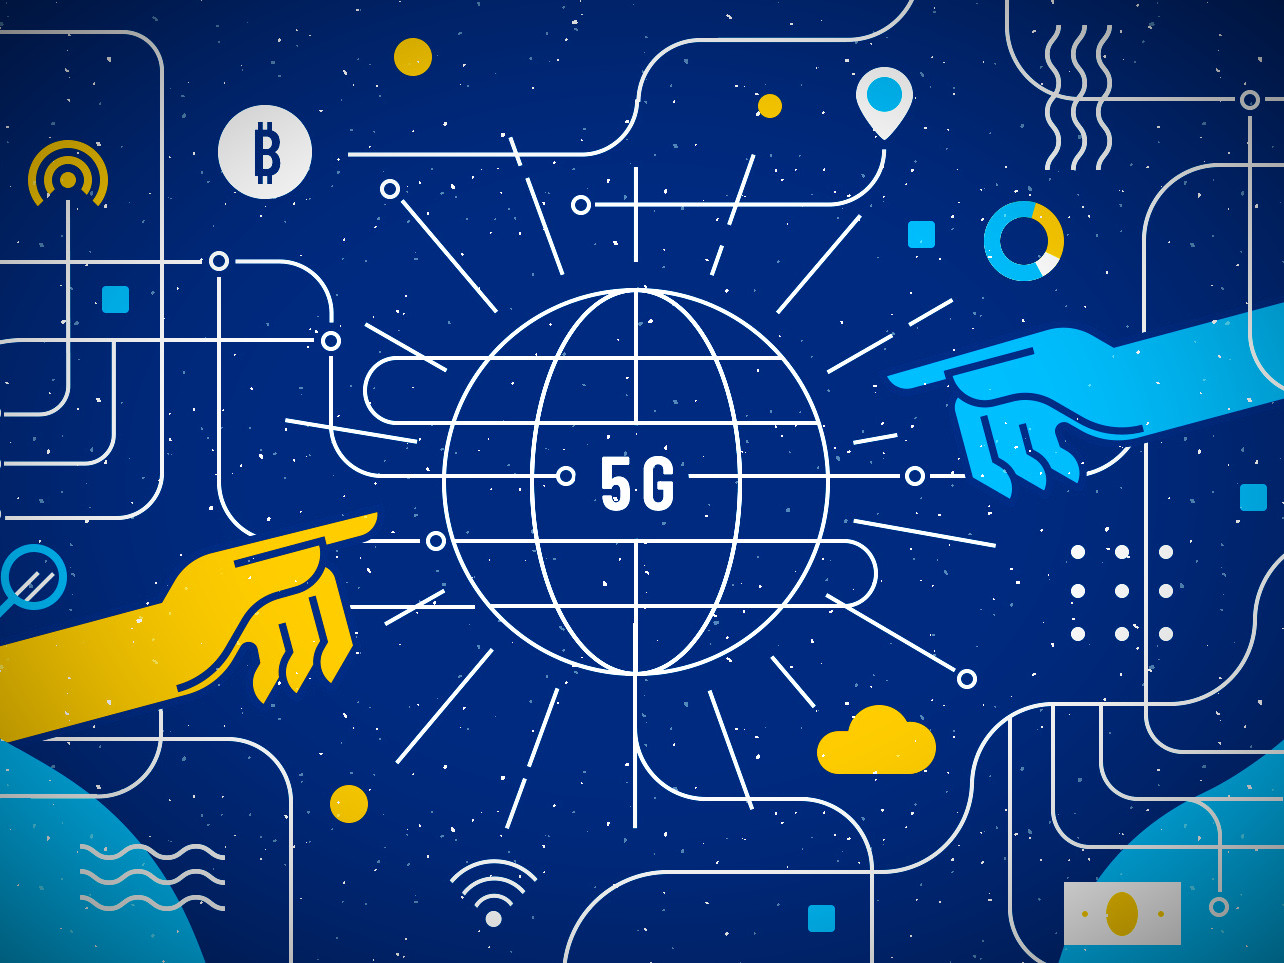 Δίκτυο 5G: Όσα πρέπει να γνωρίζετε για την εποχή της… πέμπτης γενιάς